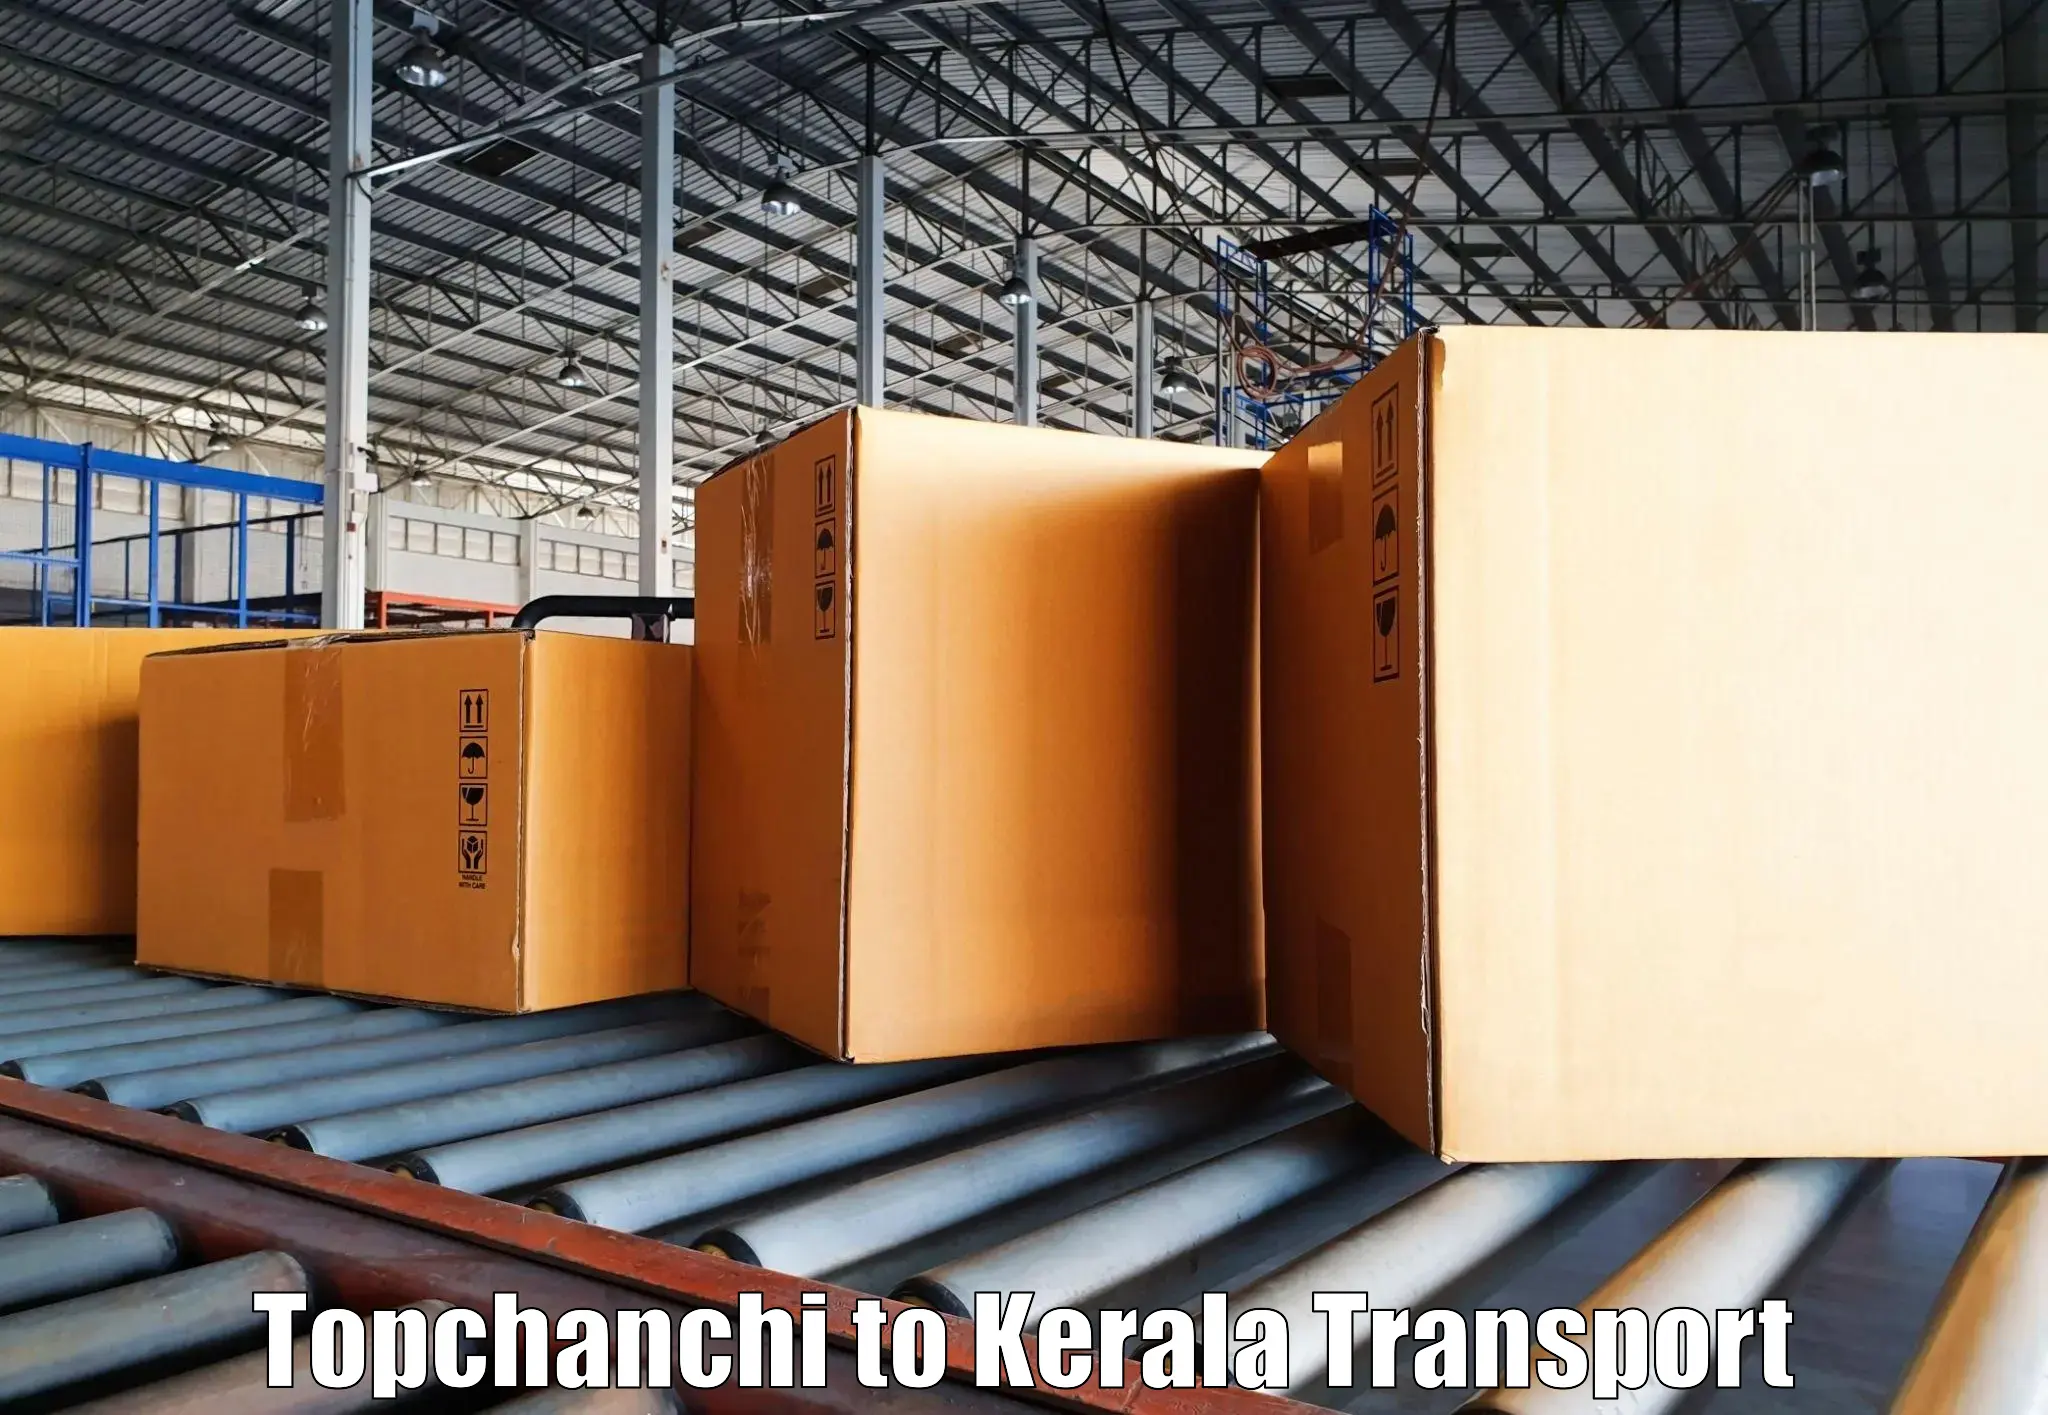 Pick up transport service Topchanchi to Chungathara